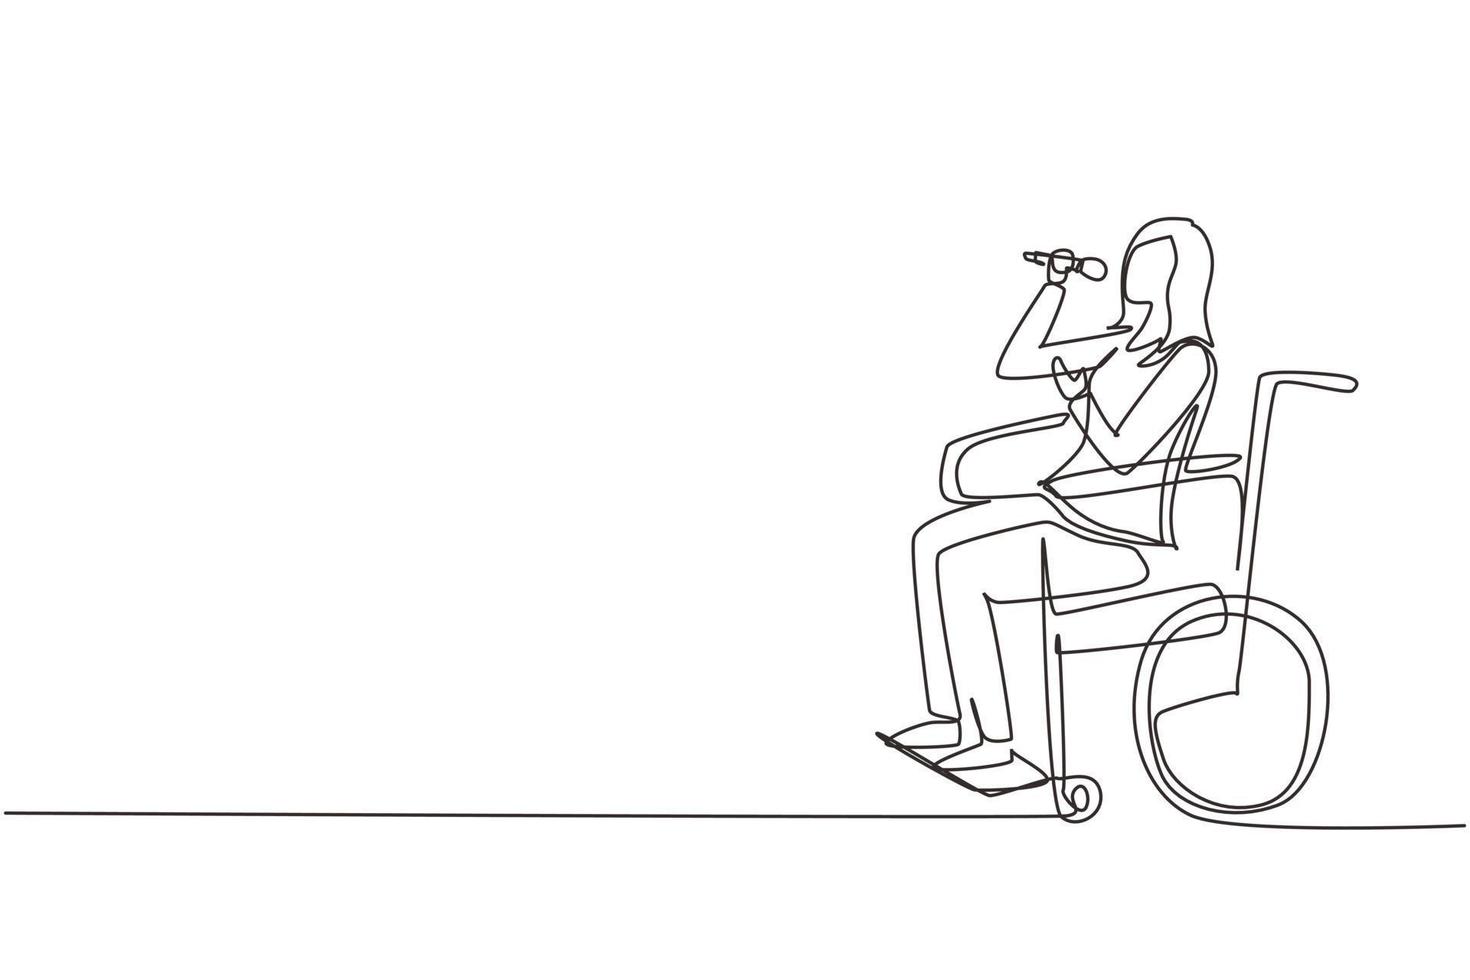 kontinuerlig en rad ritning funktionshindrade person njuter av livet. skönhet kvinna sitter i rullstol sjunger på karaoke bar. spendera tid på rekreationsställen. enkel rad rita design vektorillustration vektor